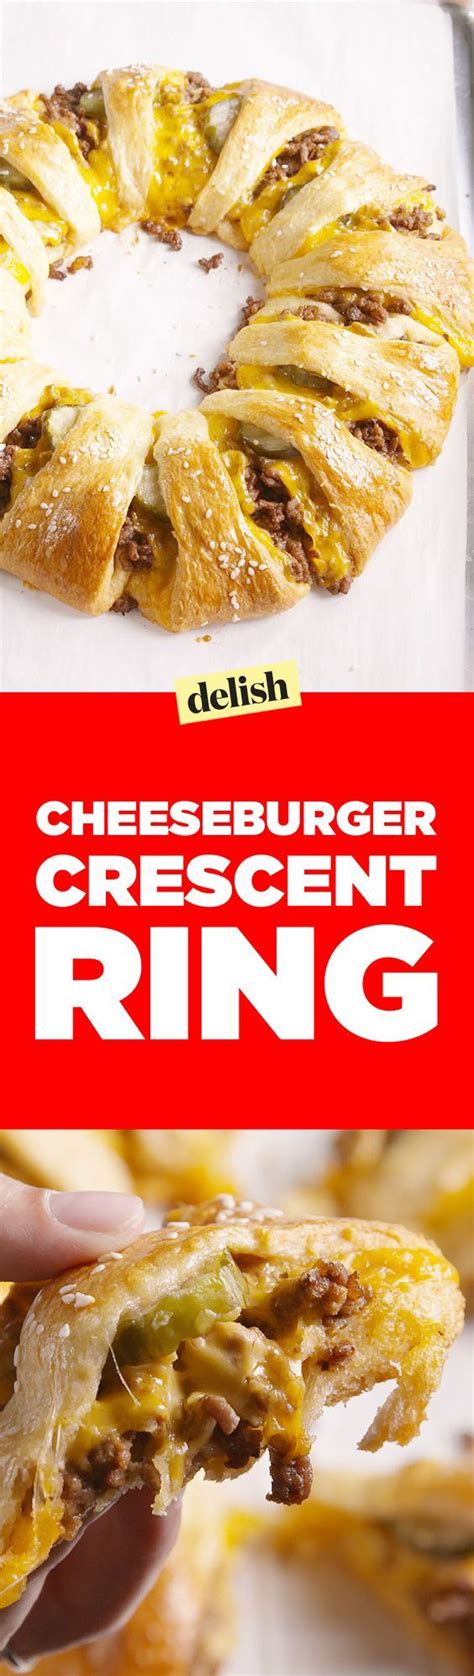 cheeseburger crescent ring recipe crescent recipes